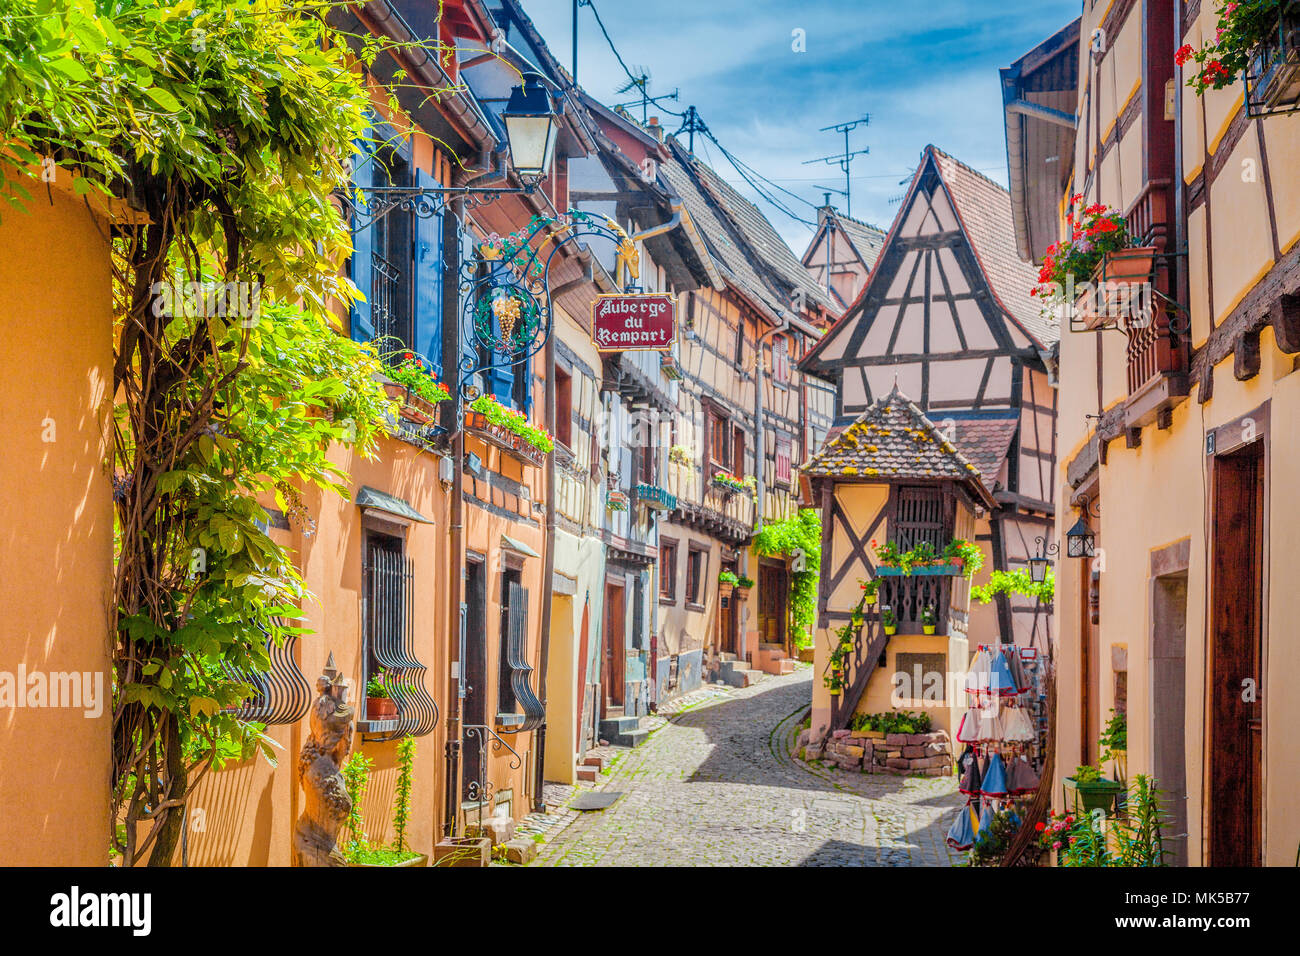 Charmante Straße Szene mit bunten Häusern in der Altstadt von Eguisheim an einem schönen sonnigen Tag im Sommer, Elsass, Frankreich Stockfoto